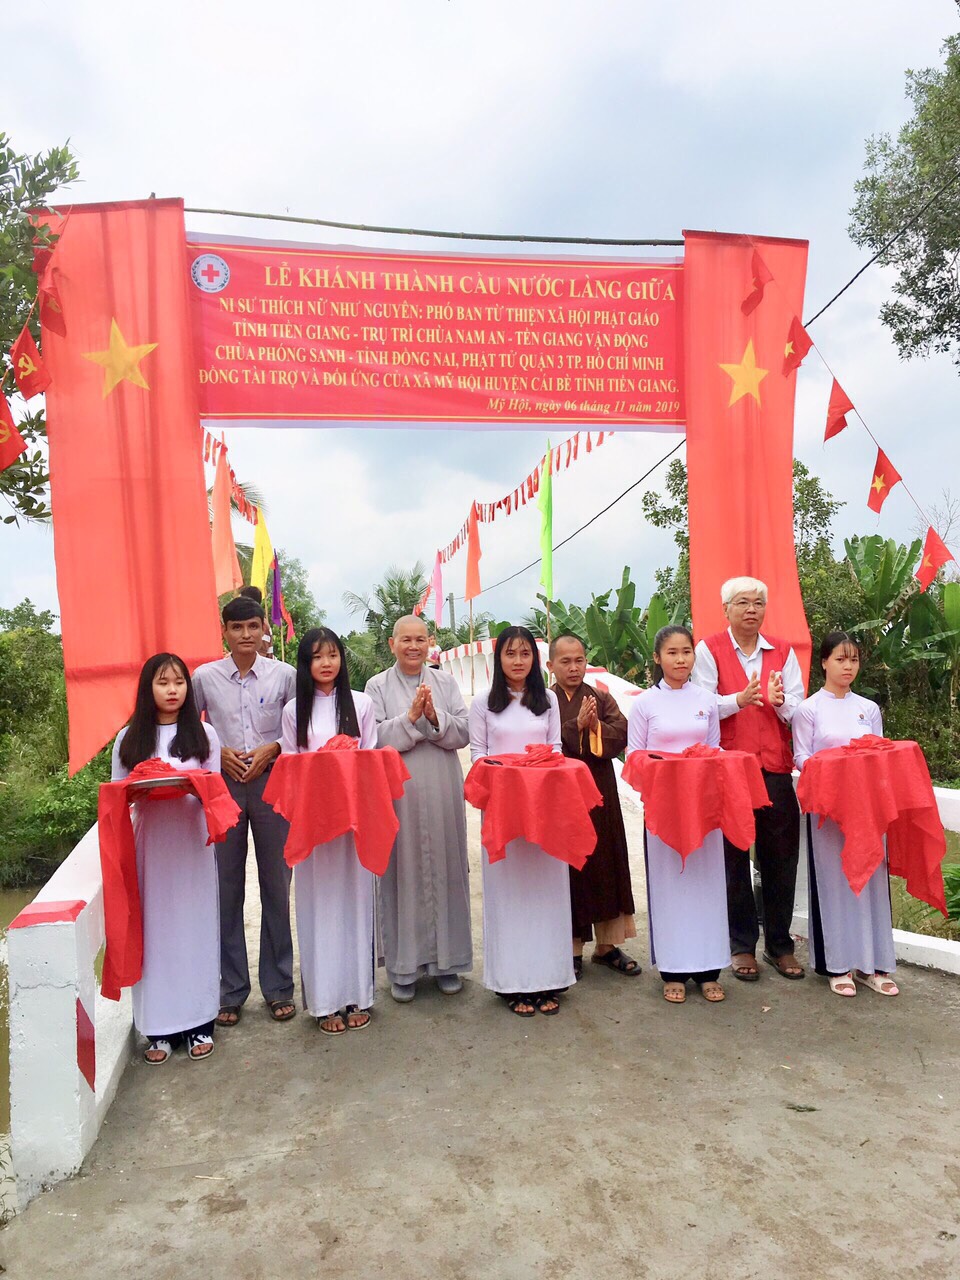 Tiền Giang: Chùa Nam An tổ chức Khánh thành cầu giao thông nông thôn tại huyện Cái Bè